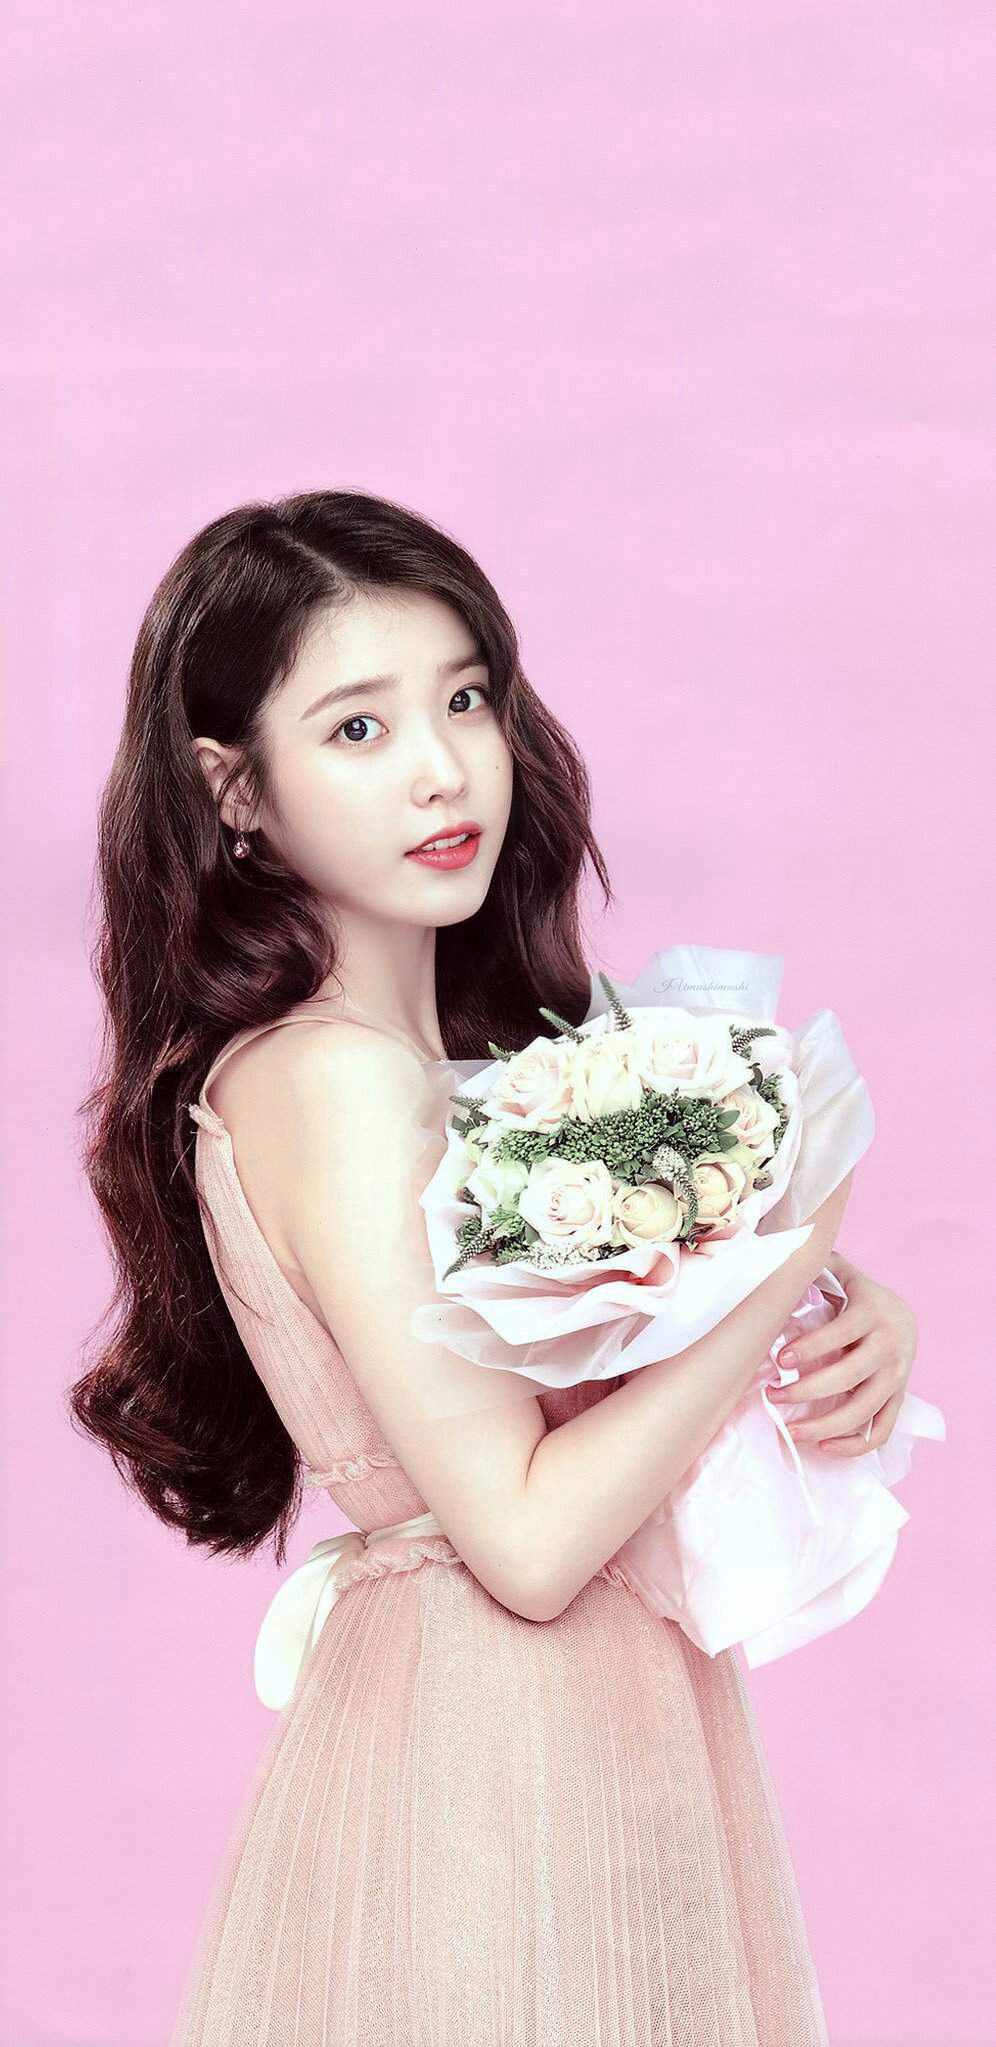 Desktop Wallpaper Lee Ji Eun Iu South Korean K Pop Singer Hd Image Gambaran